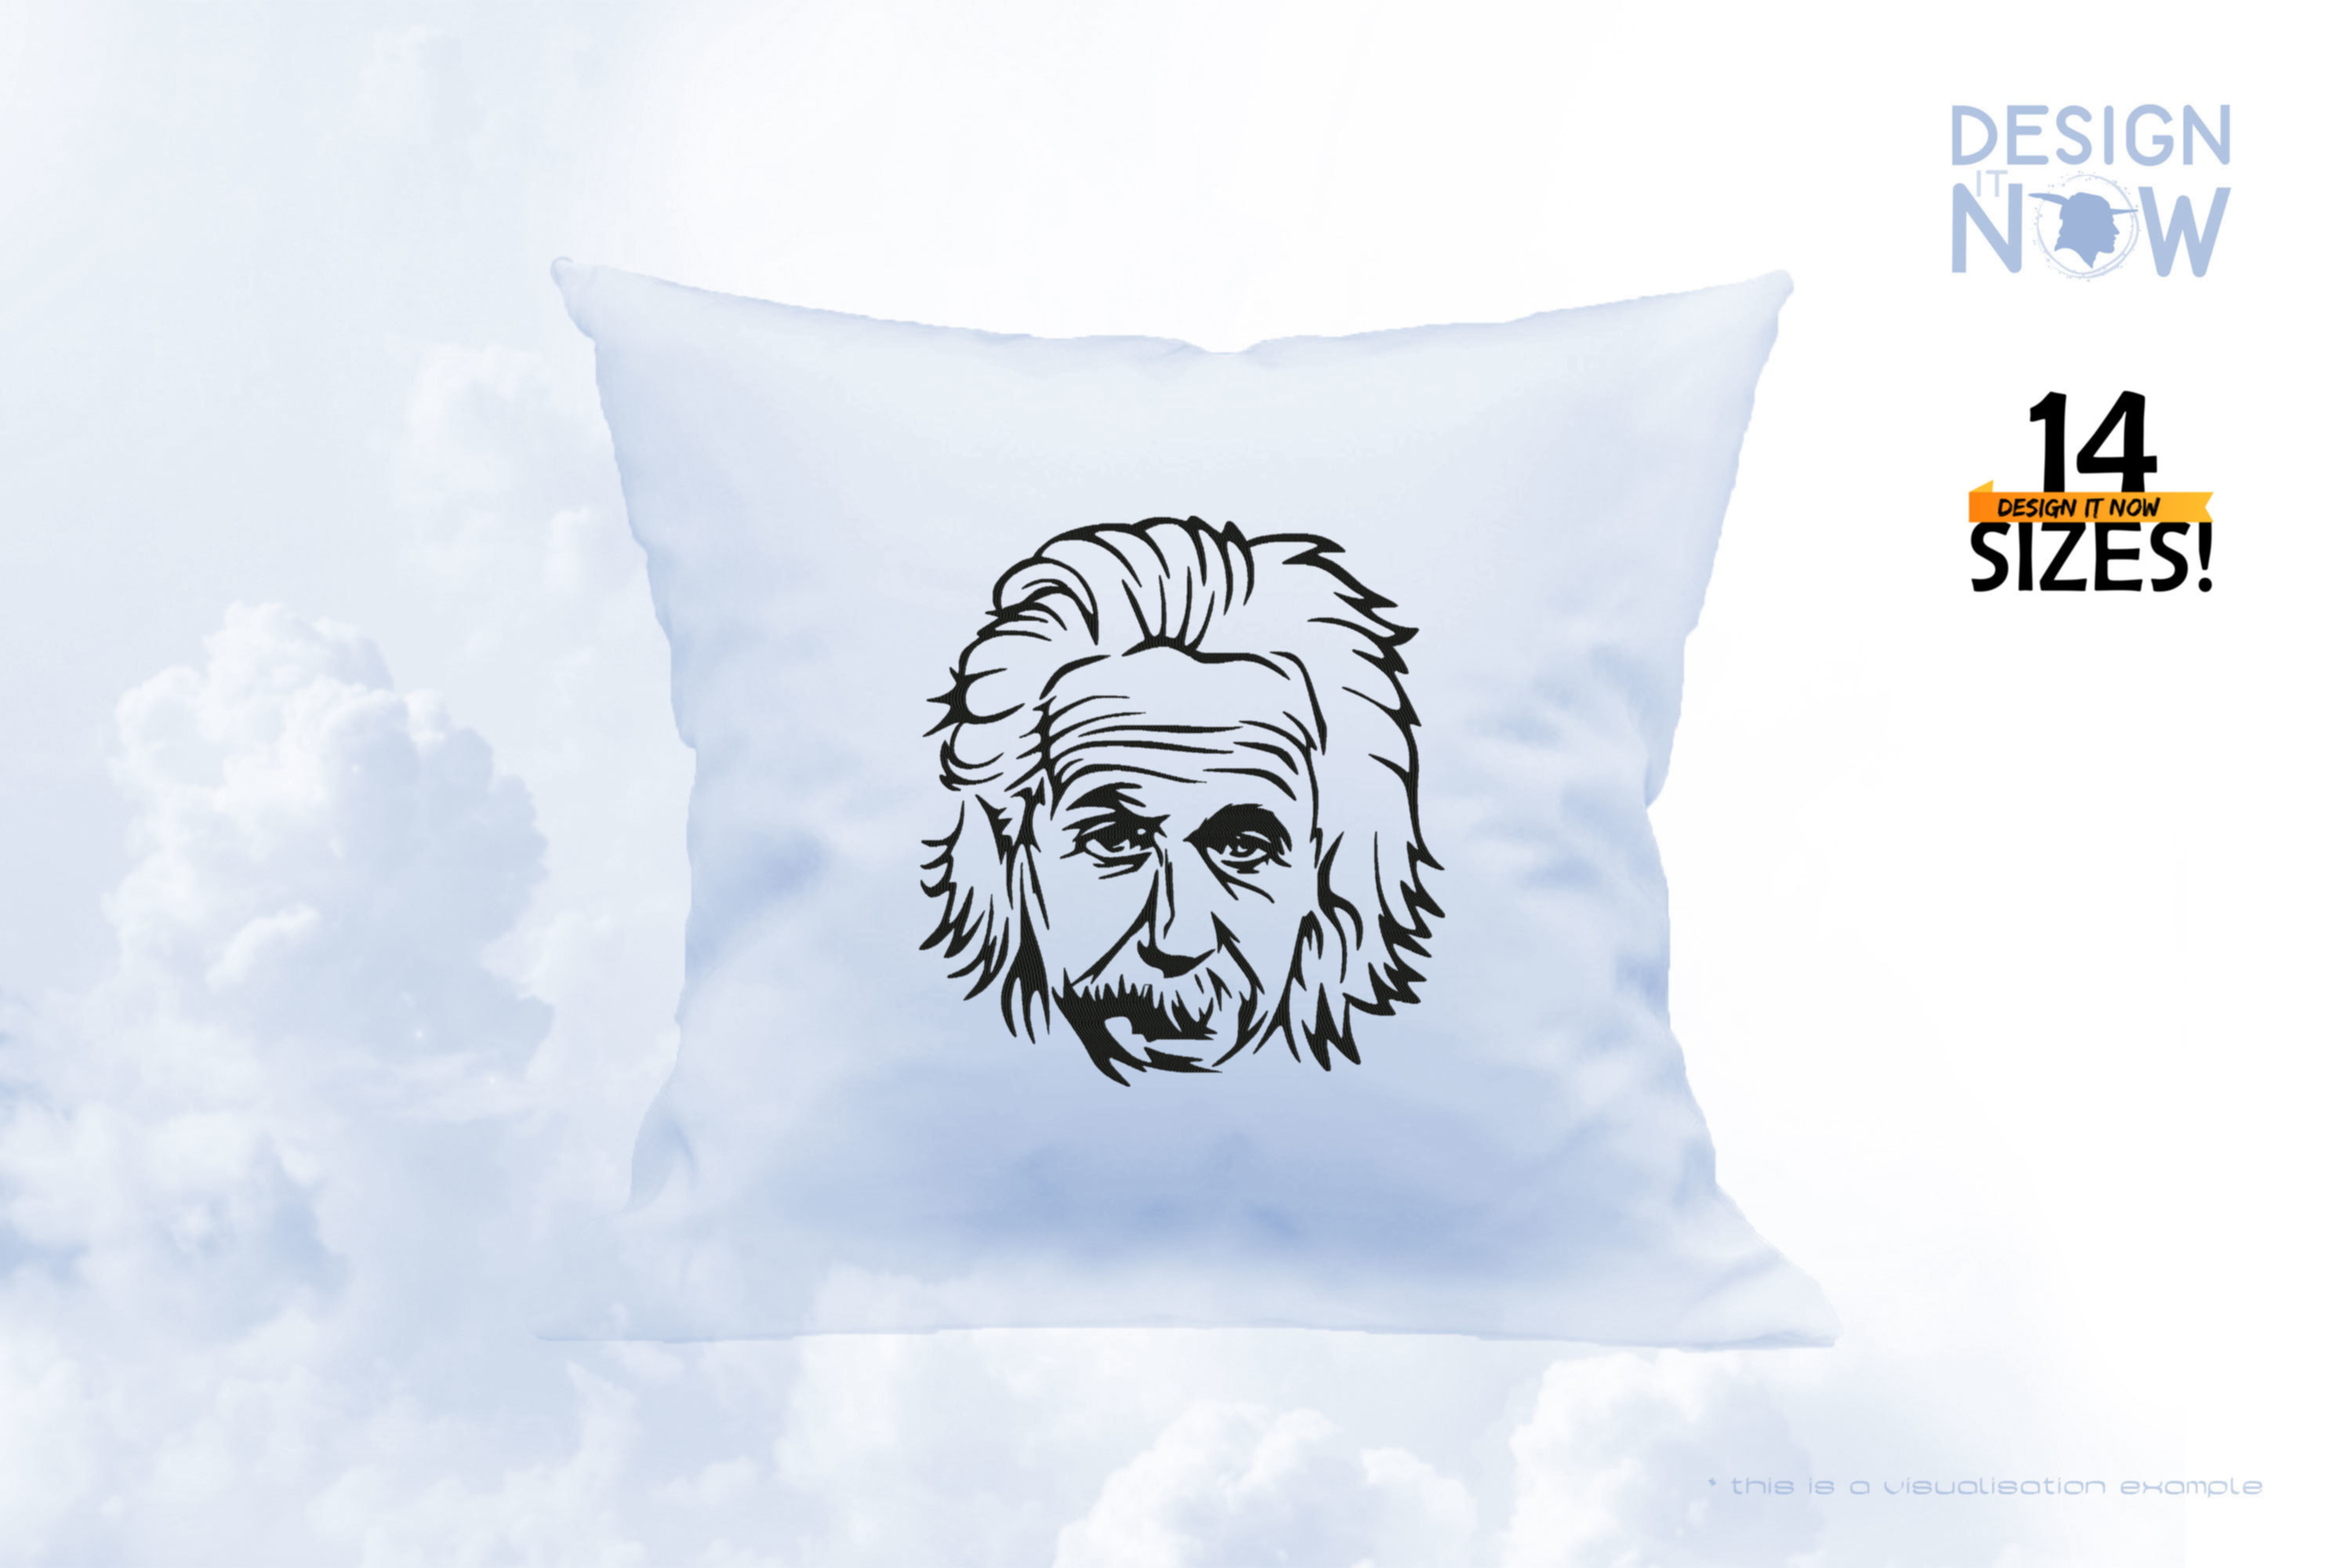 Tribute To Physicist A. Einstein aka Albert Einstein II